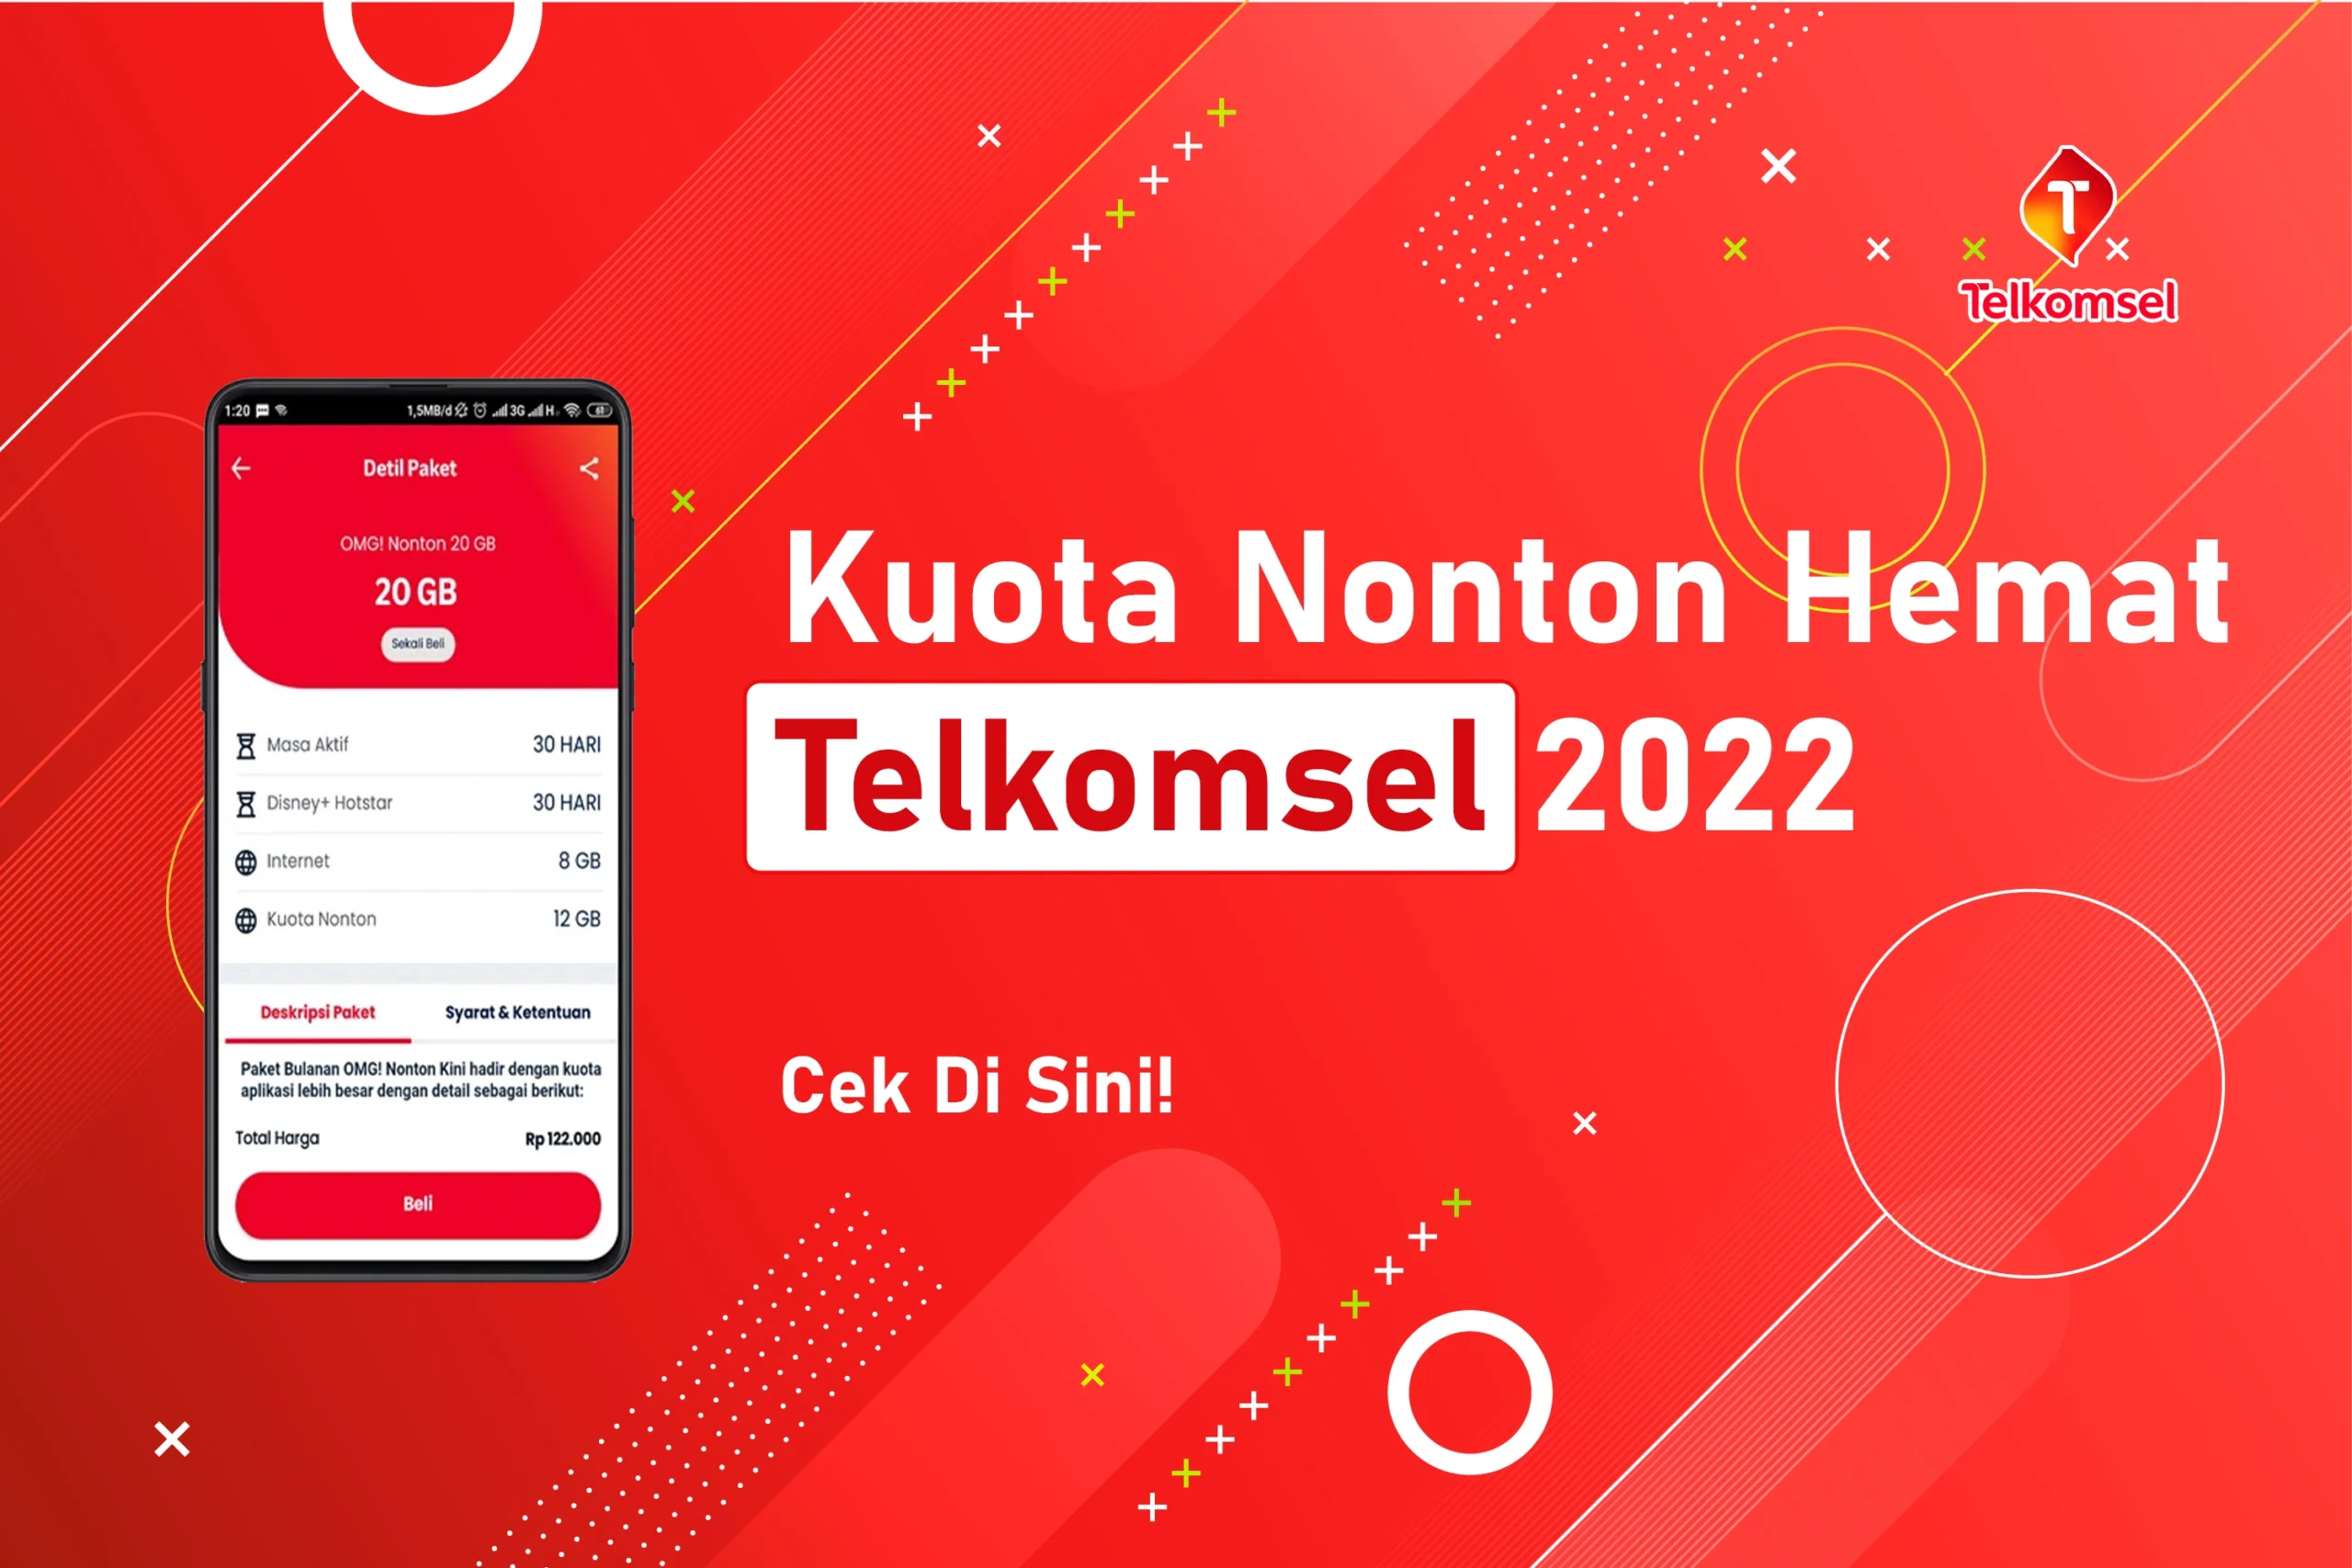 Kuota Nonton Hemat Telkomsel 2022